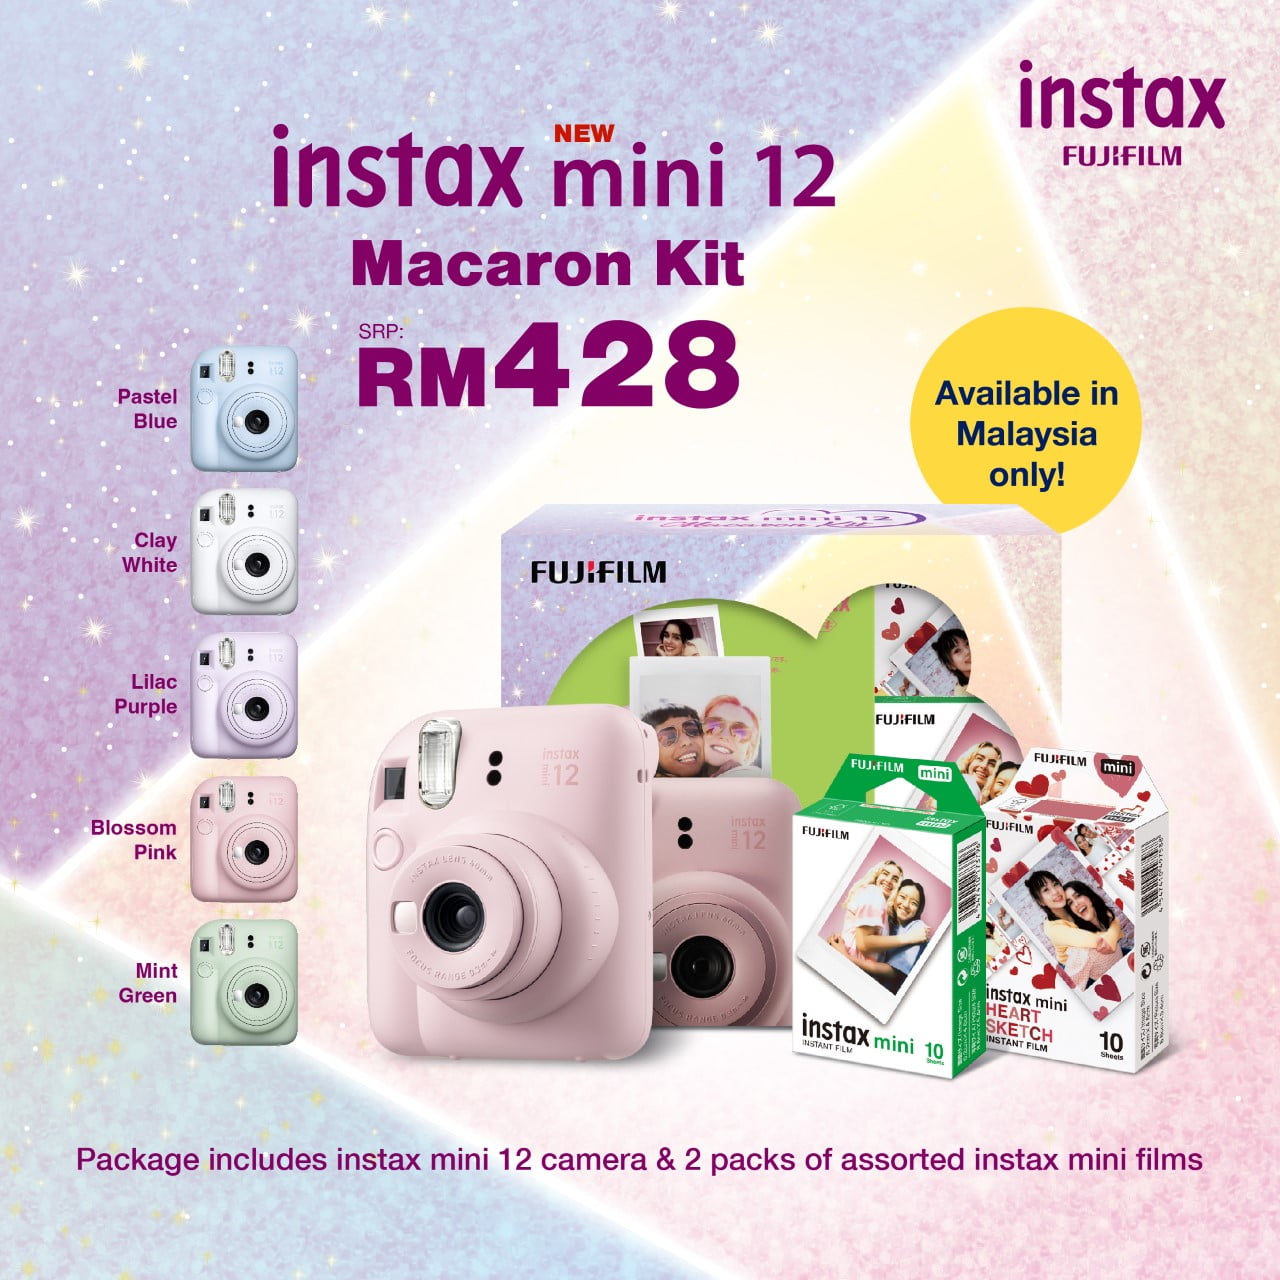 Instax New mini 12 Maracon Kit